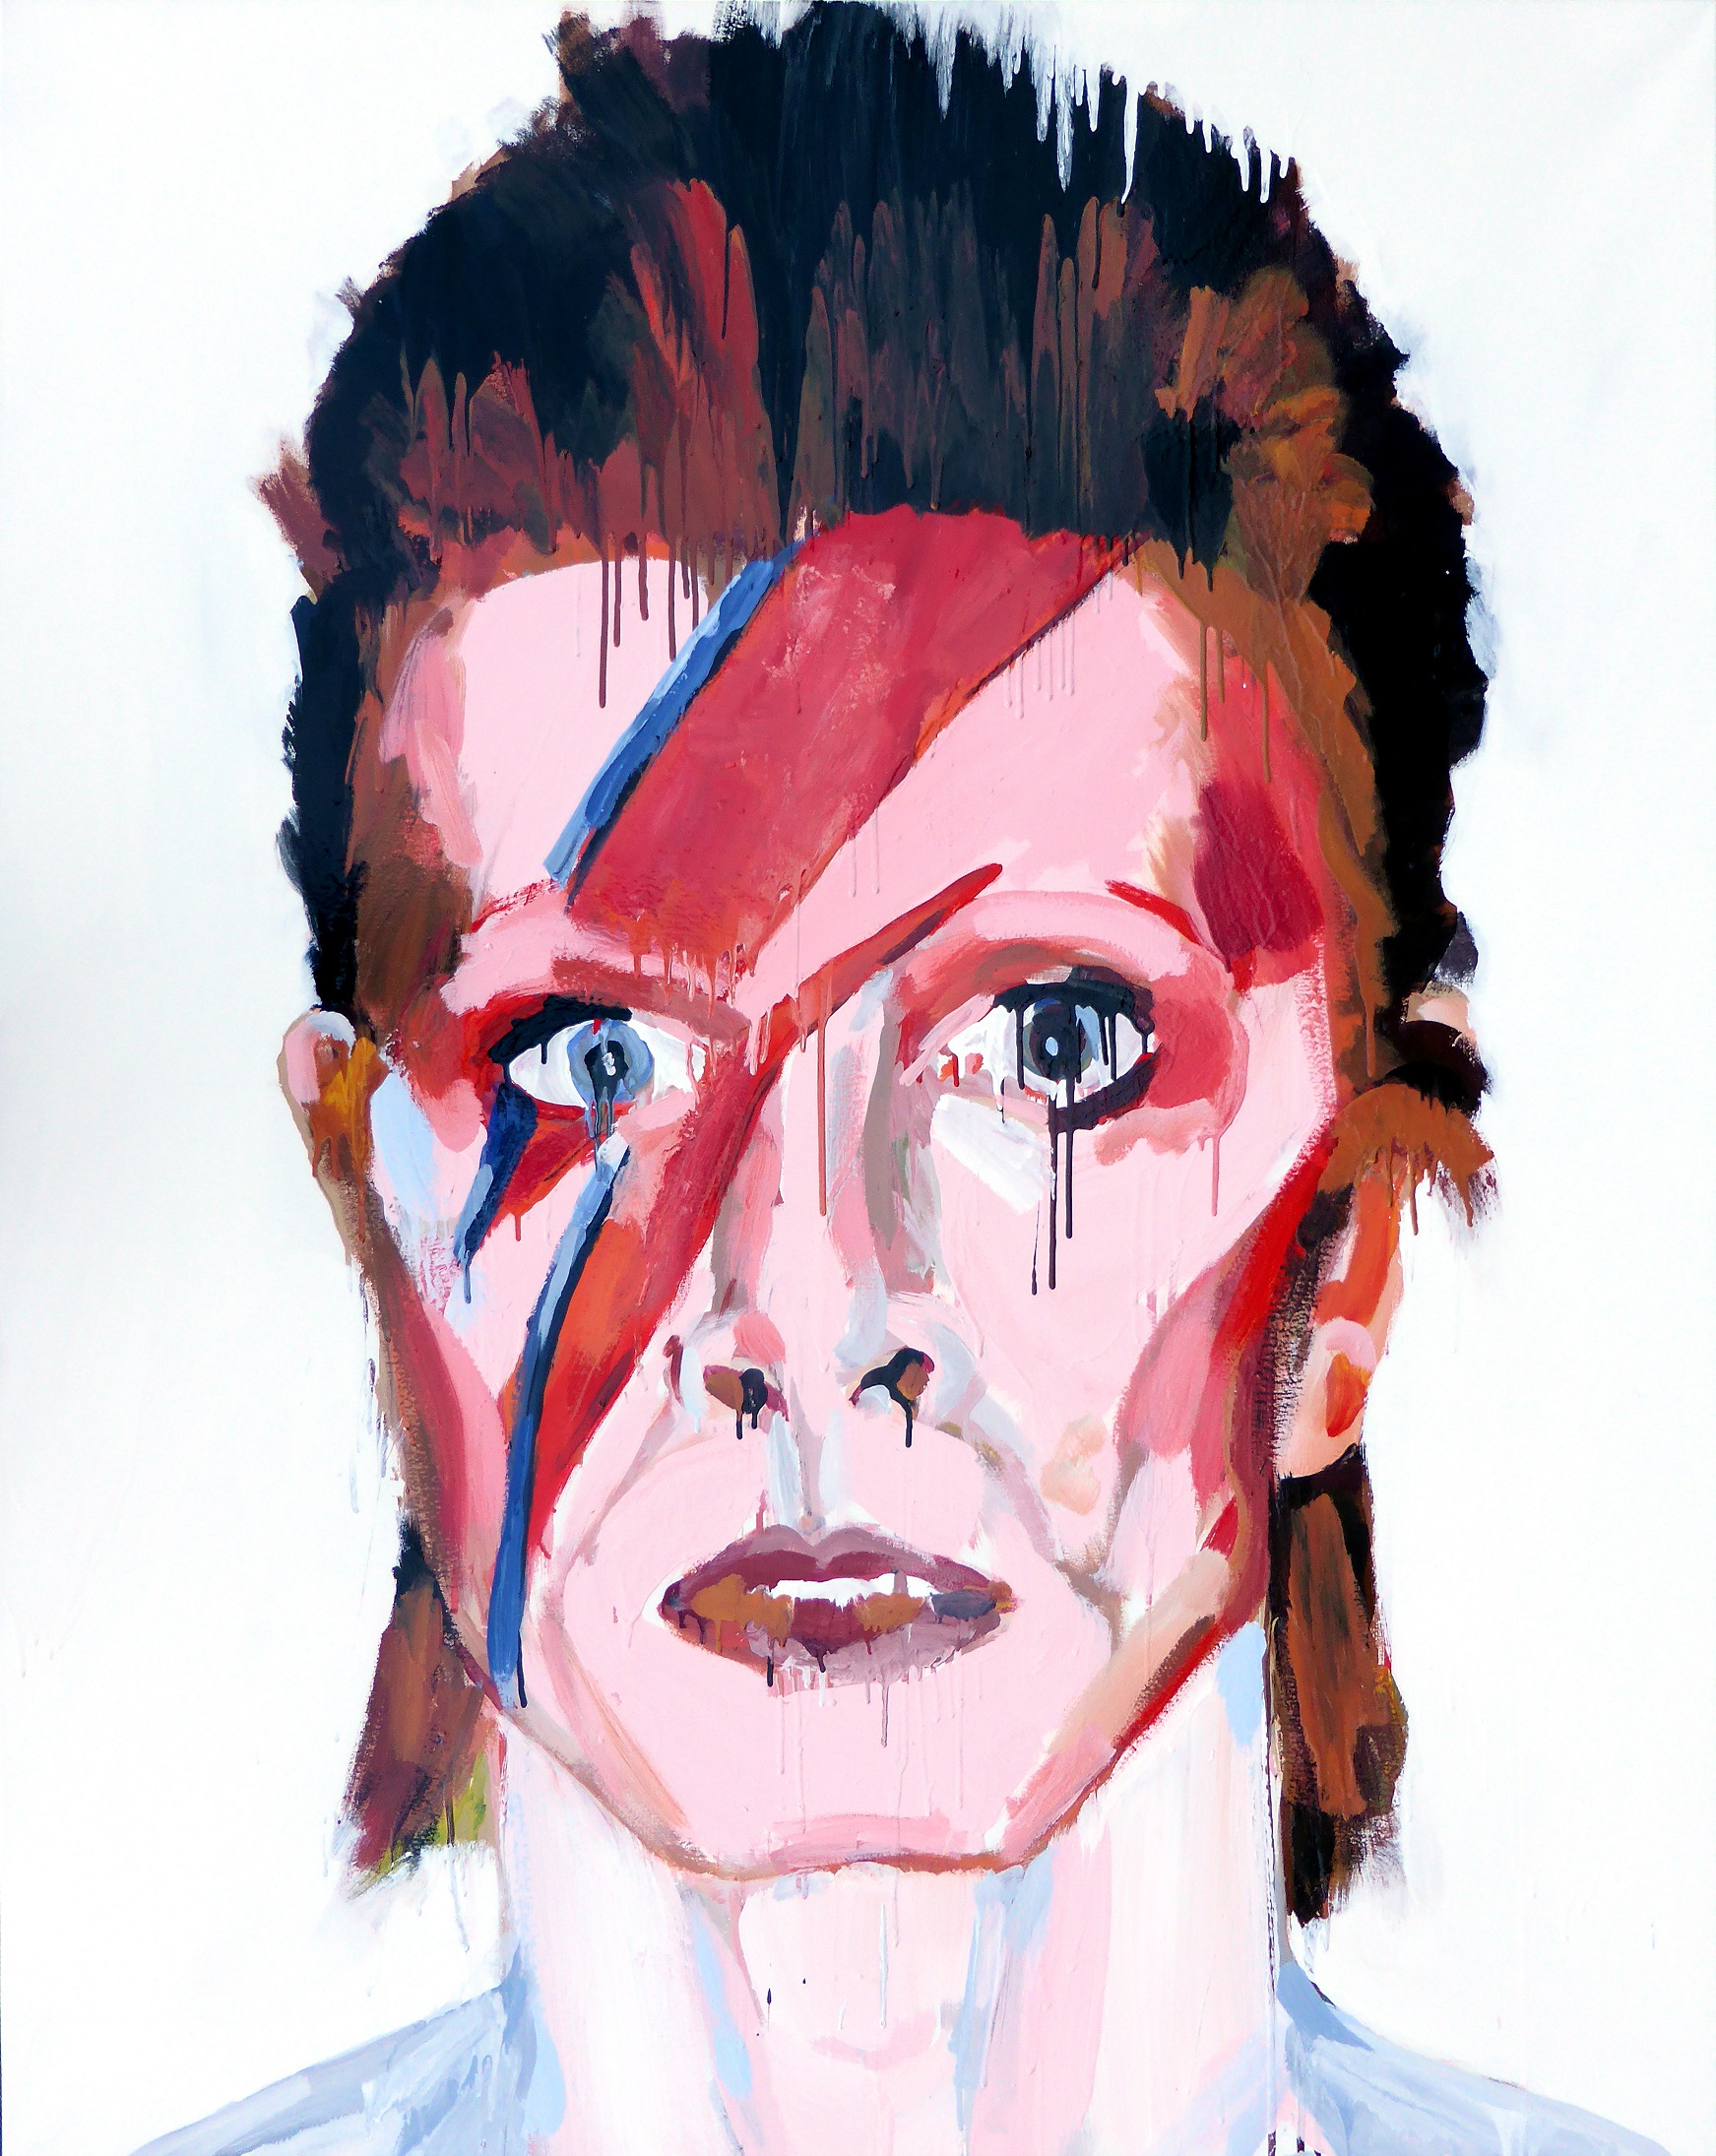 David Bowie: A Ladd in Sane